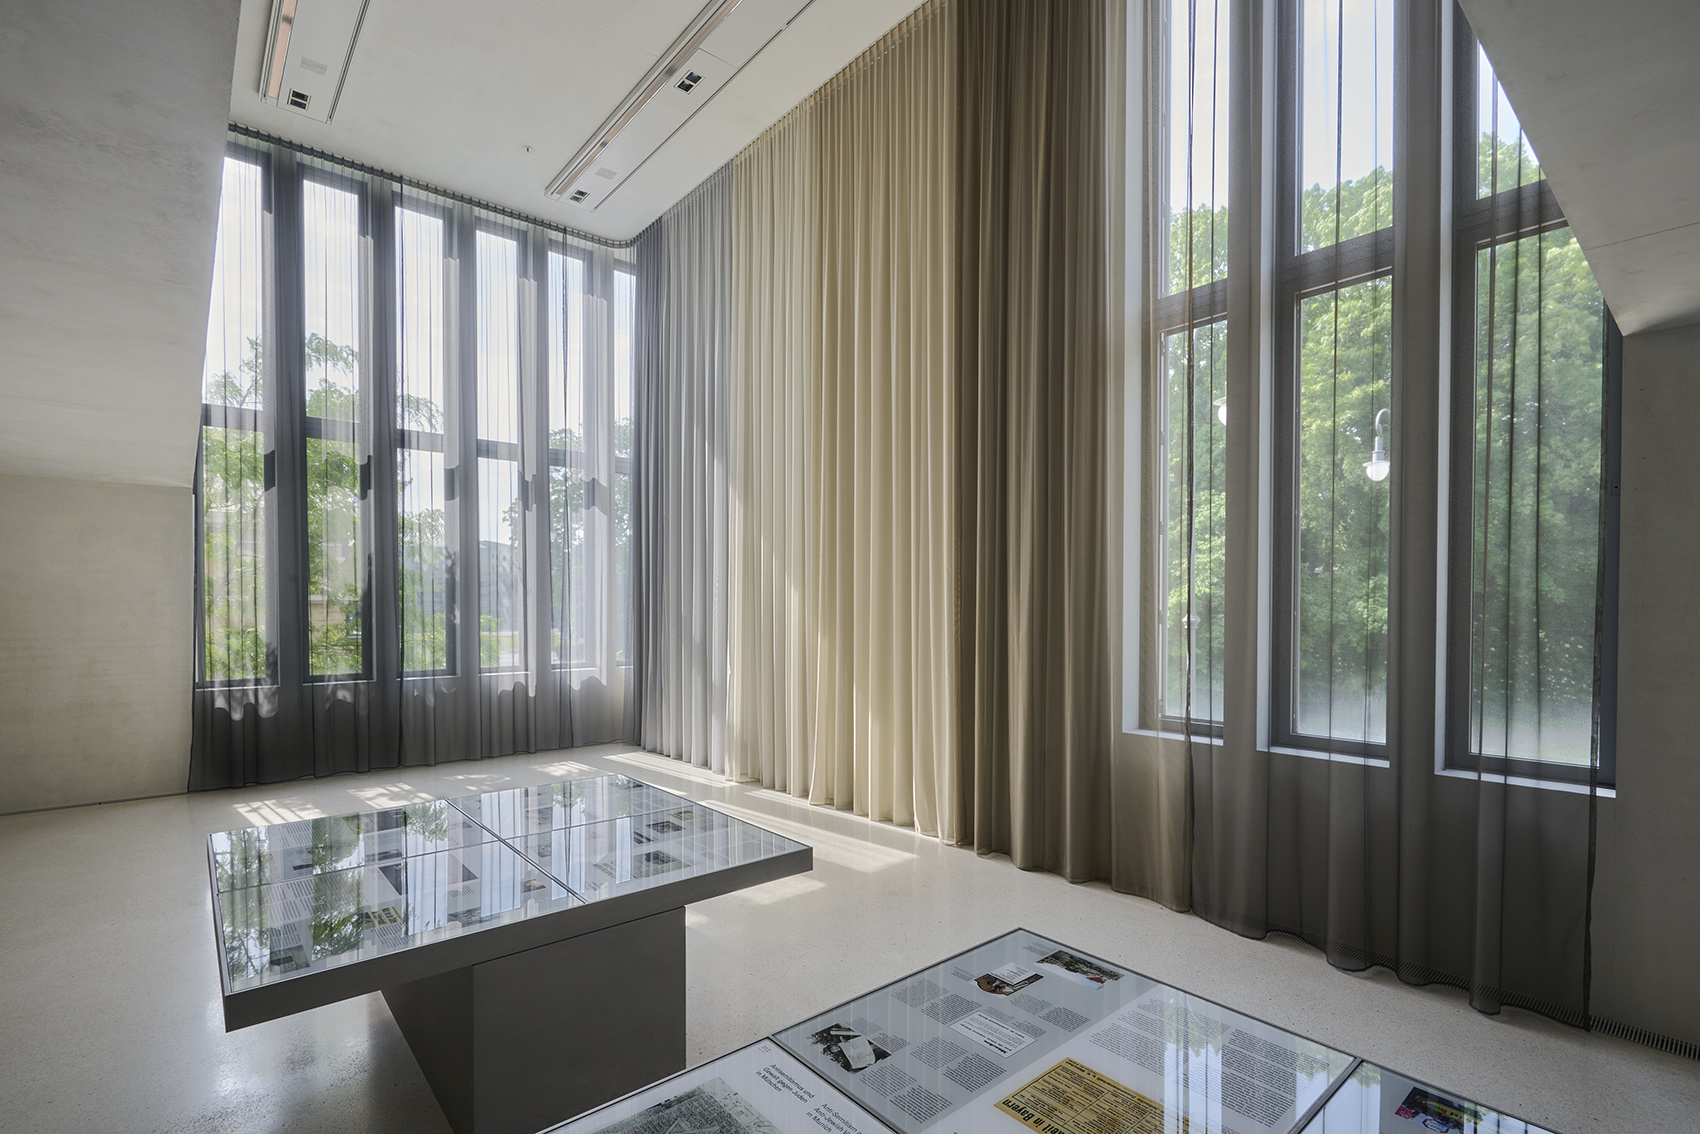 Stoffgardinen grau weiss beige braun, böhmler Einrichtungshaus München, Objekteinrichtung, Museum